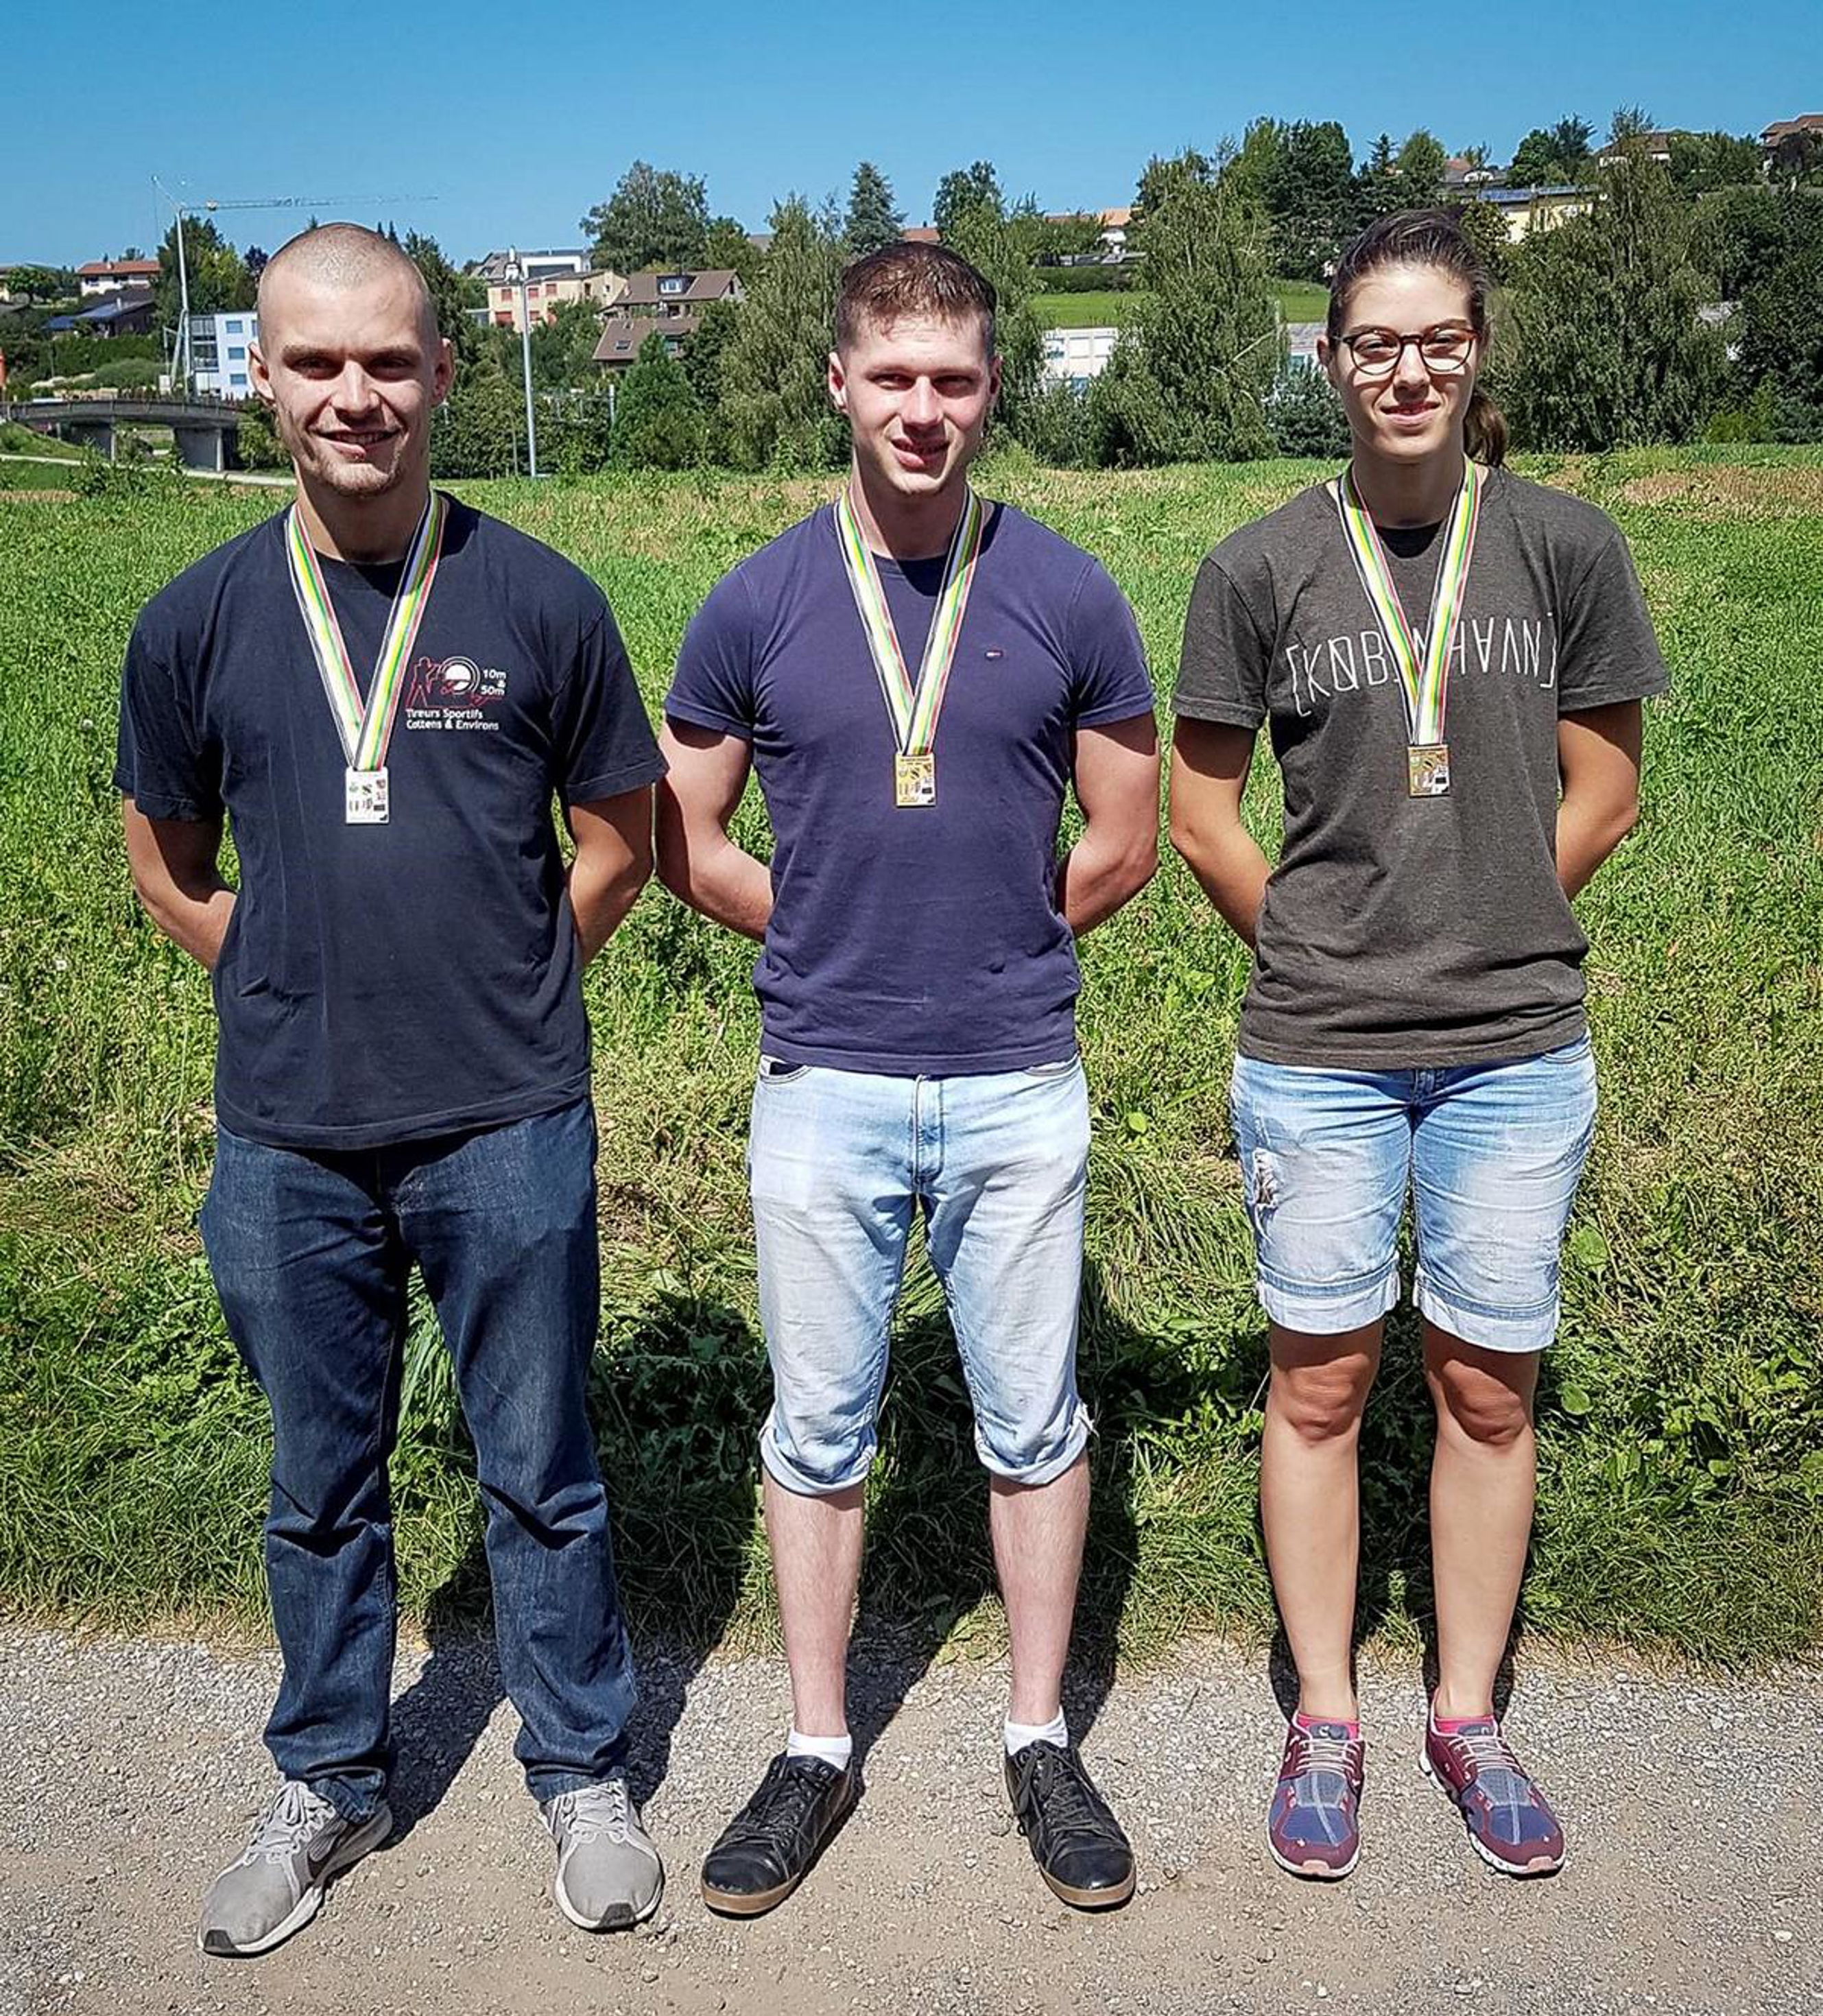 Les meilleurs résultats individuels du Tir romand PC 2019 avec, de gauche à droite, Ludovic Rohrbasser (2e), Robin Frund (1er) et Alicia Steiner (3e).